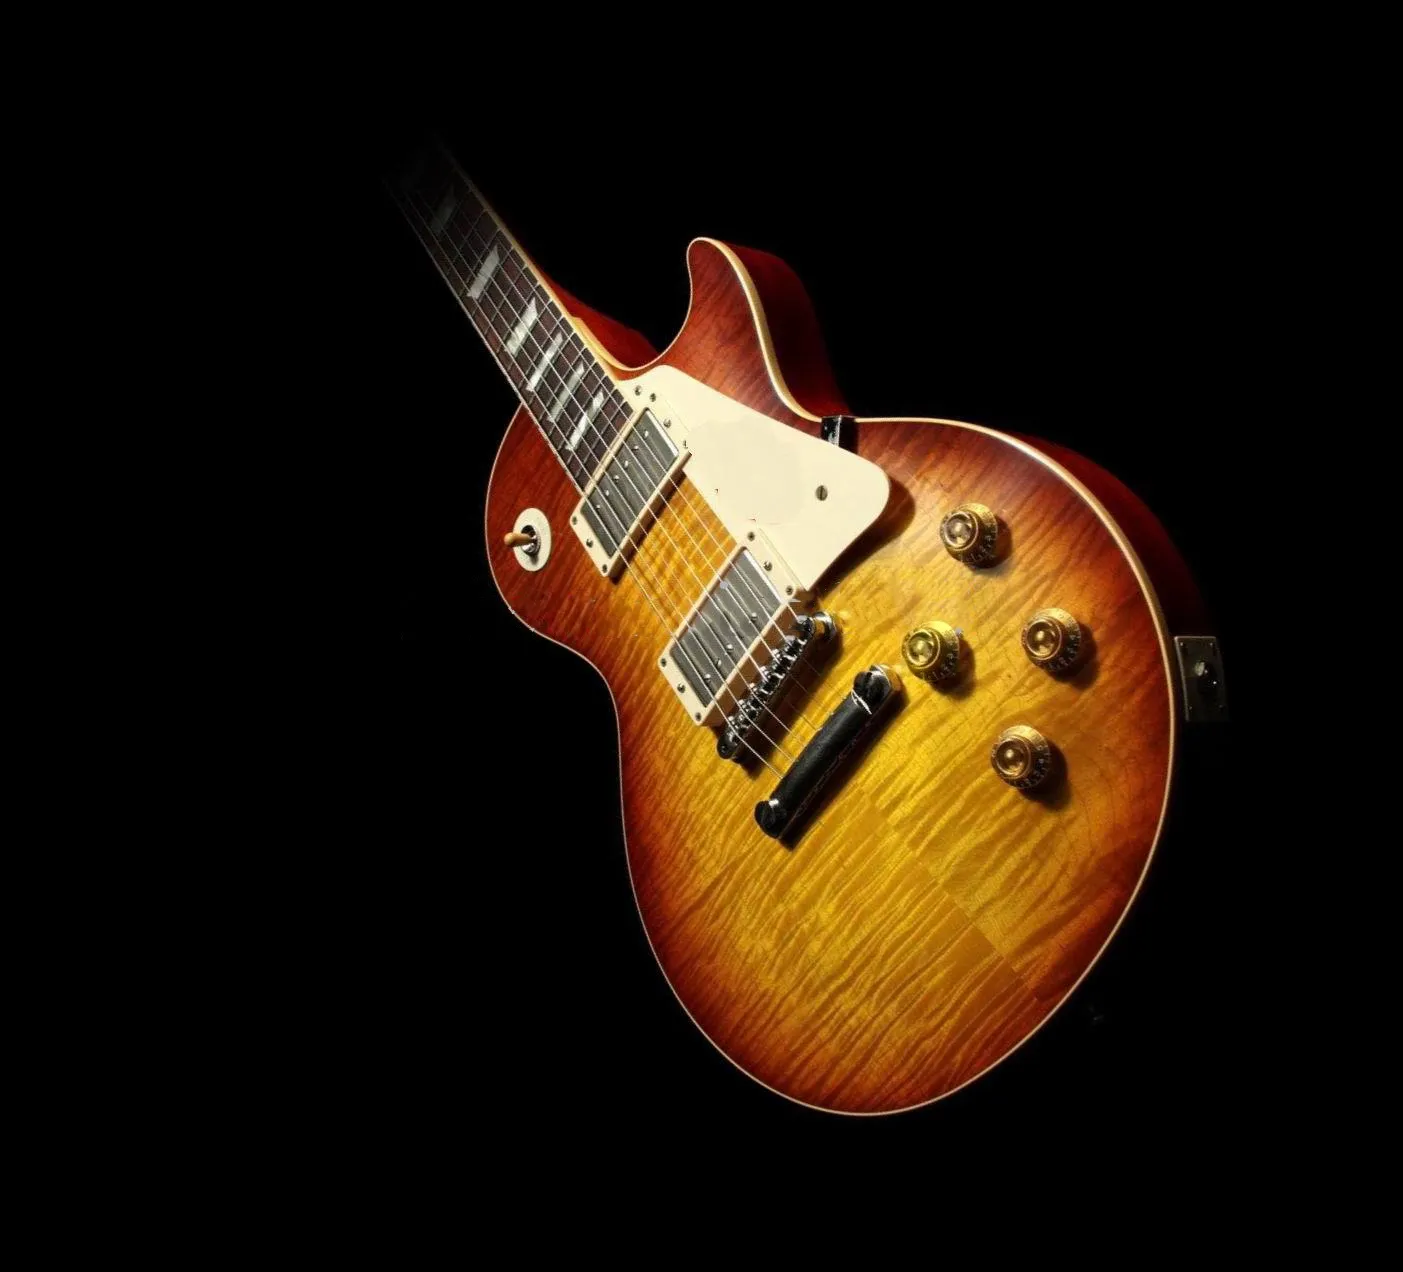 W magazynie! 1959 R9 VOS Tobacco Sunburst Jimmy Page Nr 1 Gitara elektryczna Tiger Flame Maple Top, Krem PickleGuard, Kremowe Body Wiązanie